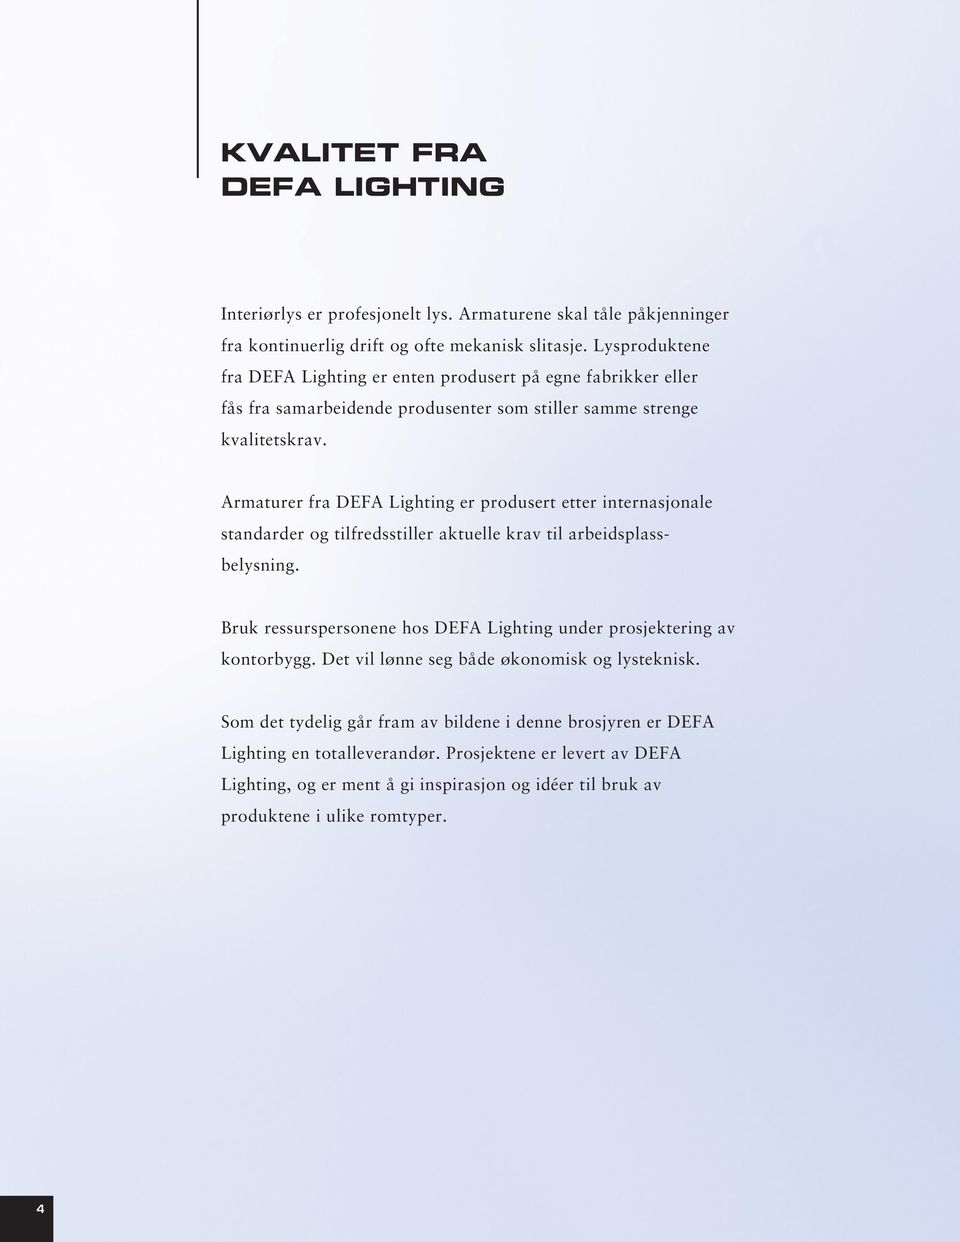 Armaturer fra DEFA Lighting er produsert etter internasjonale standarder og tilfredsstiller aktuelle krav til arbeidsplassbelysning.